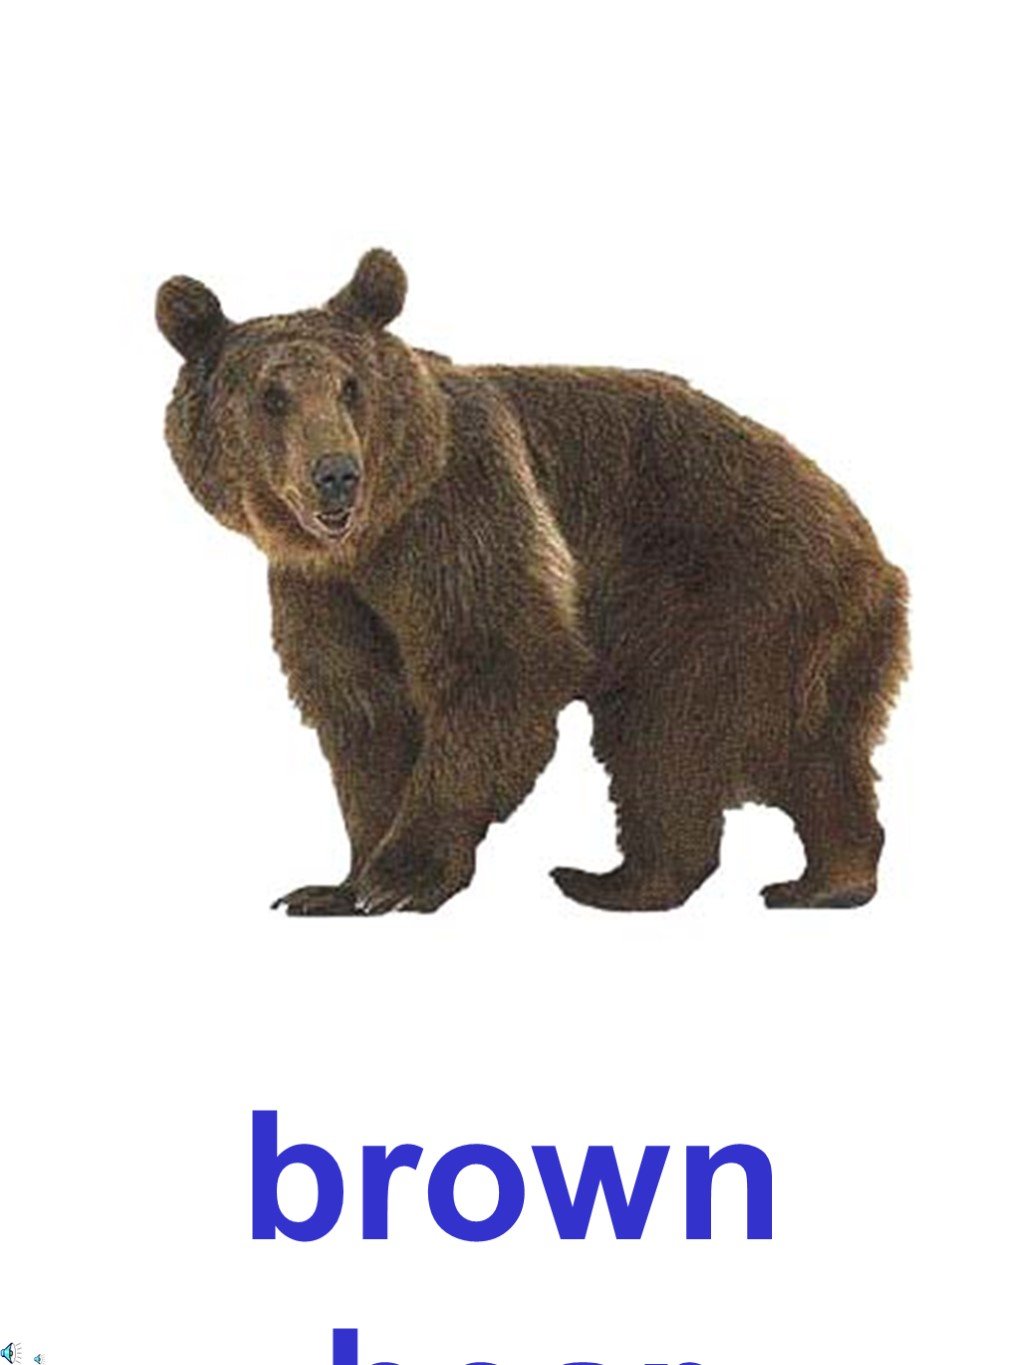 Произносим слово медведь. Медведь карточка для детей. Карточки с изображением медведя для детей. Бурый медведь. Карточки животных медведь,.